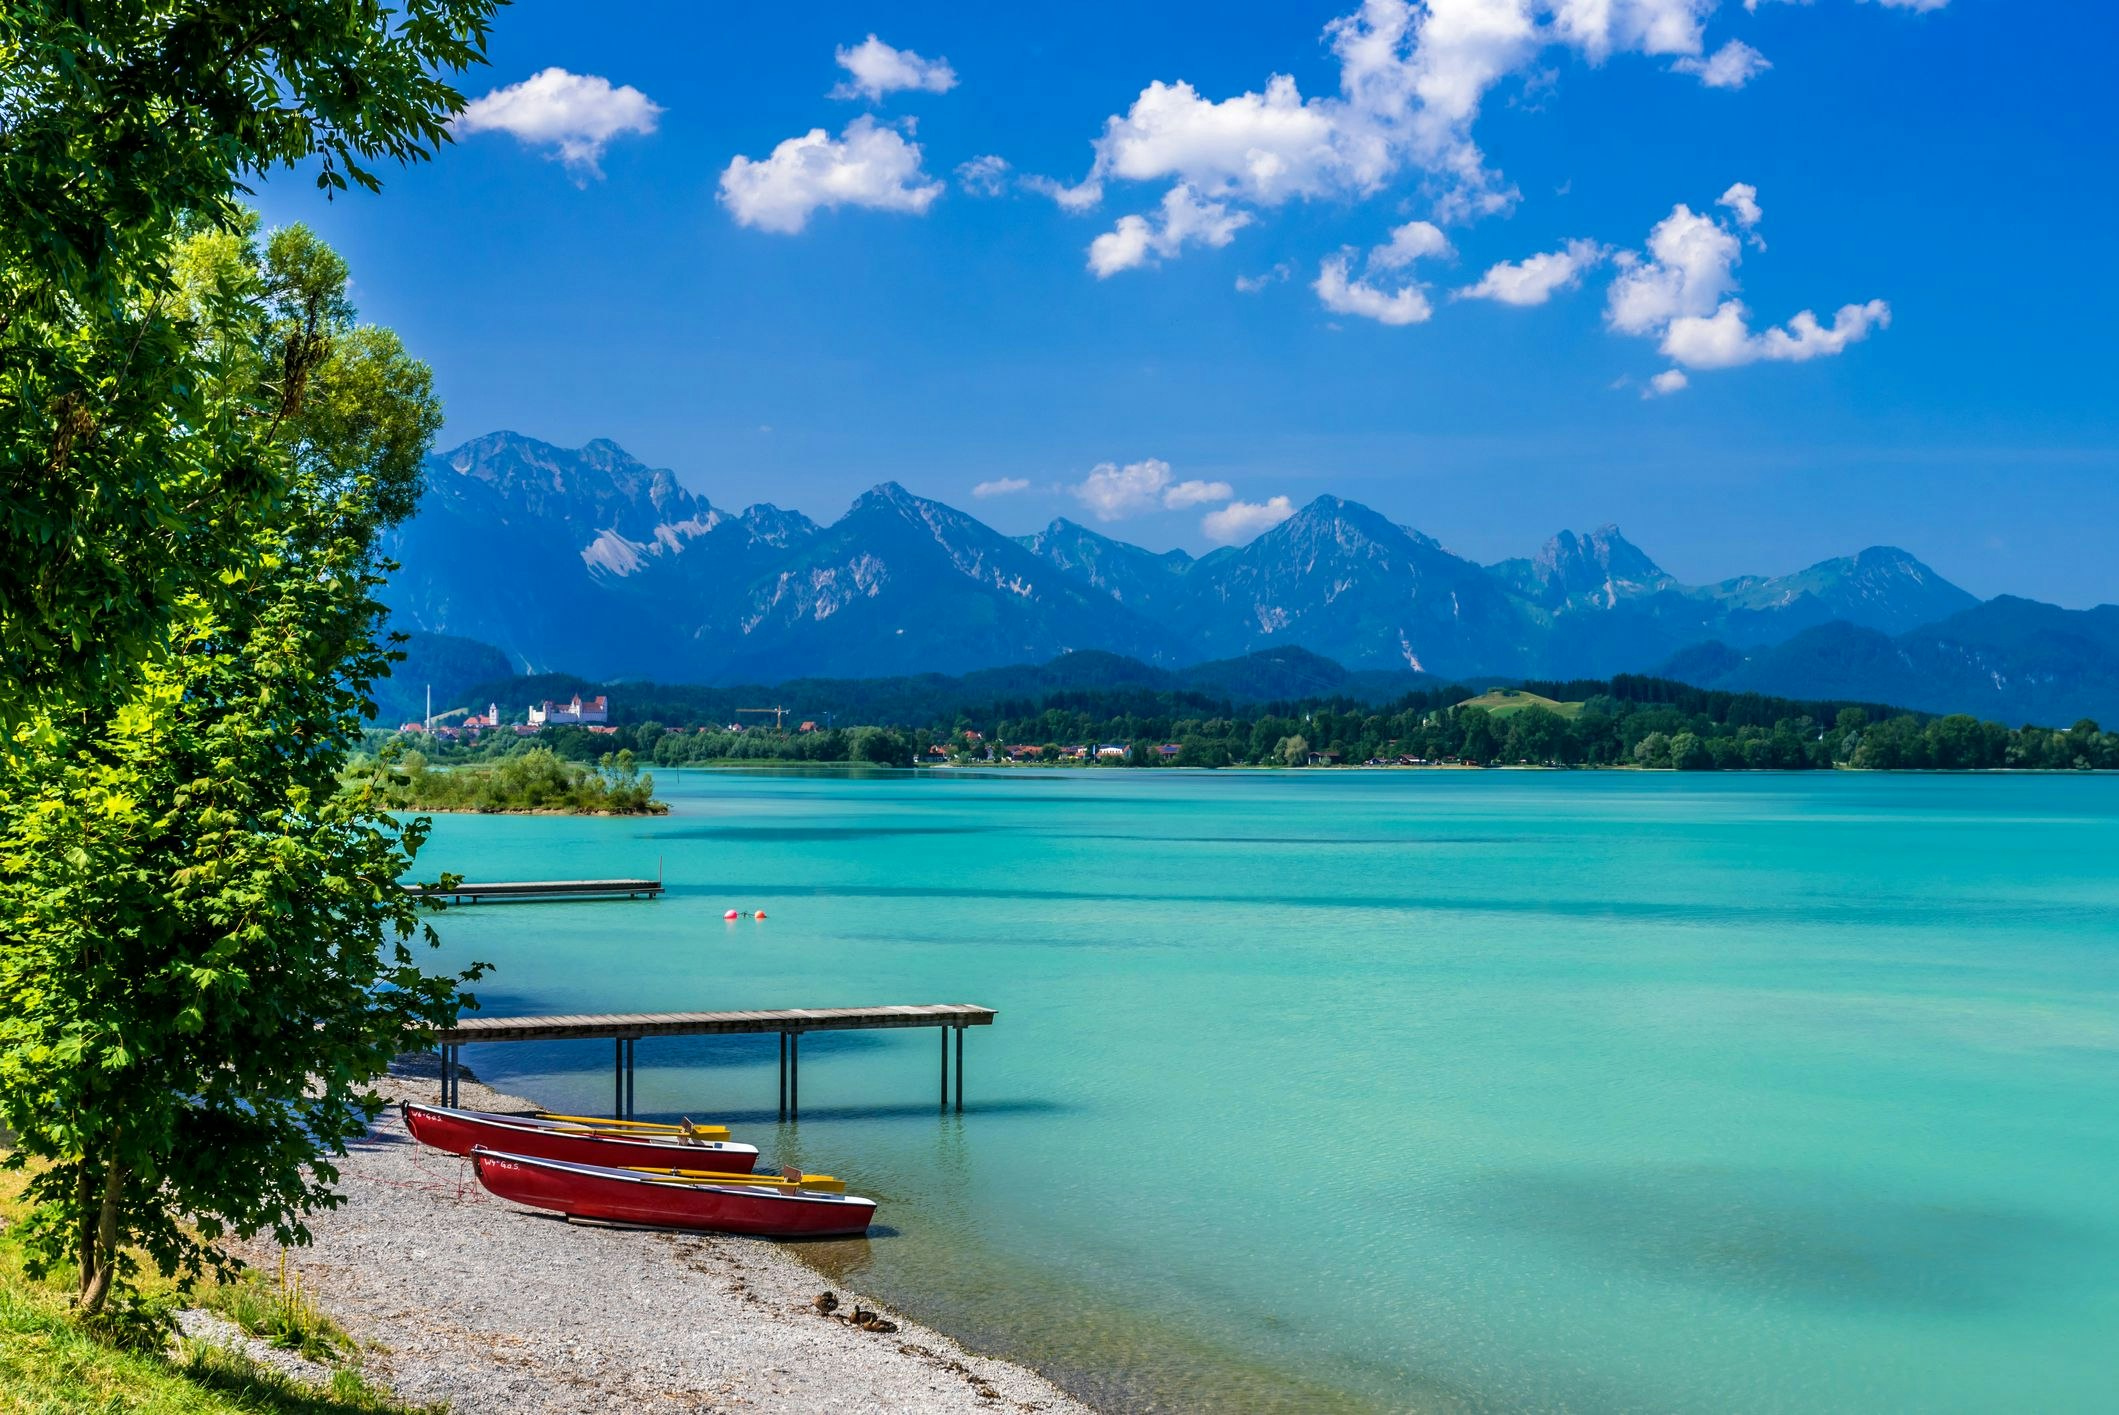 Sch 246 nste Seen in Bayern Die Top 10 Ausflugsziele Express